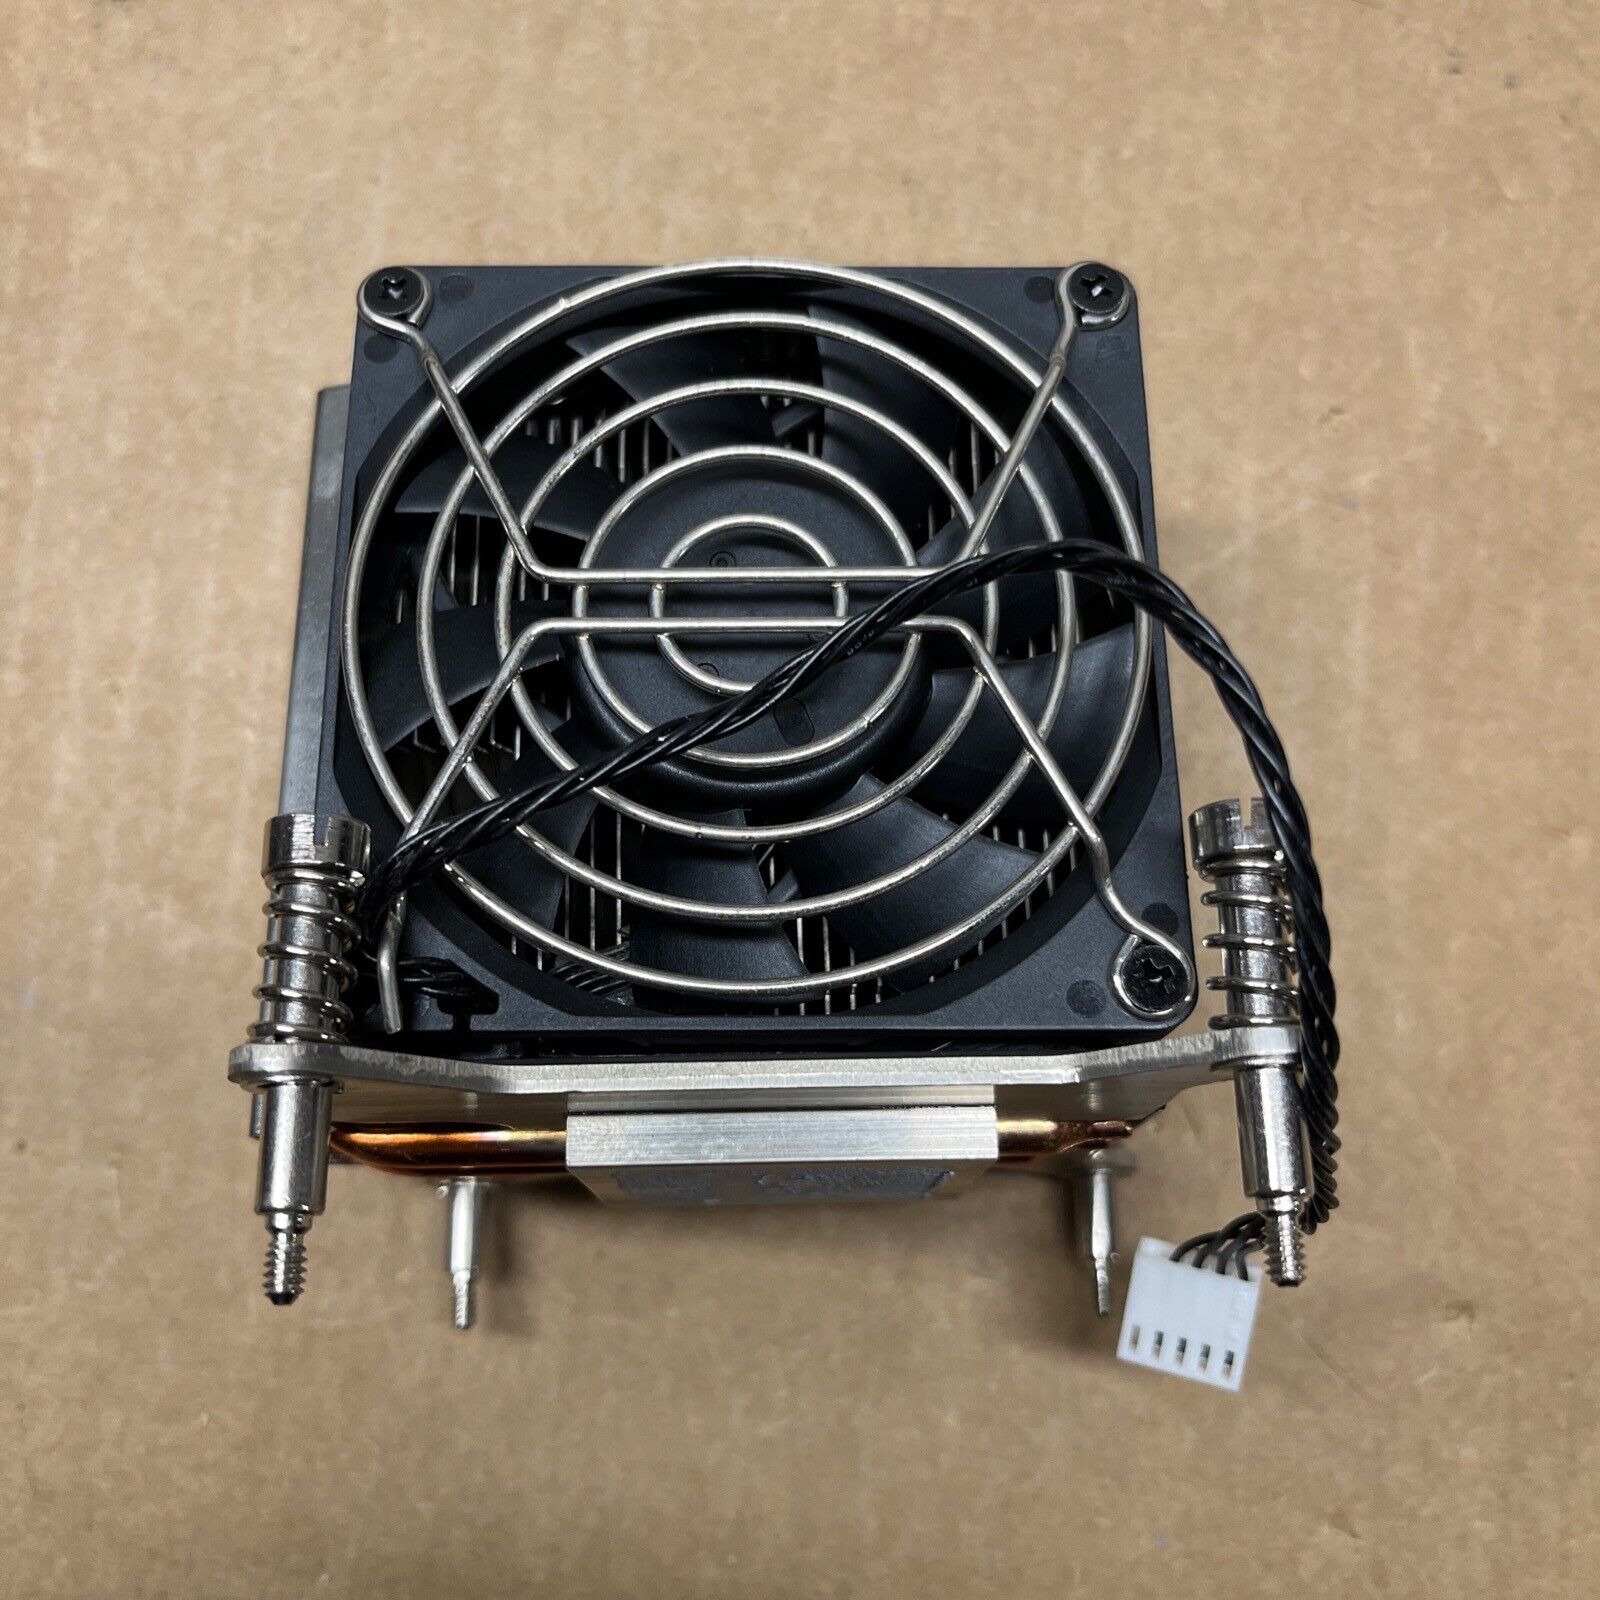 HP Z800 Z600 Z400 Heatsink and Fan Assembly 463990-001